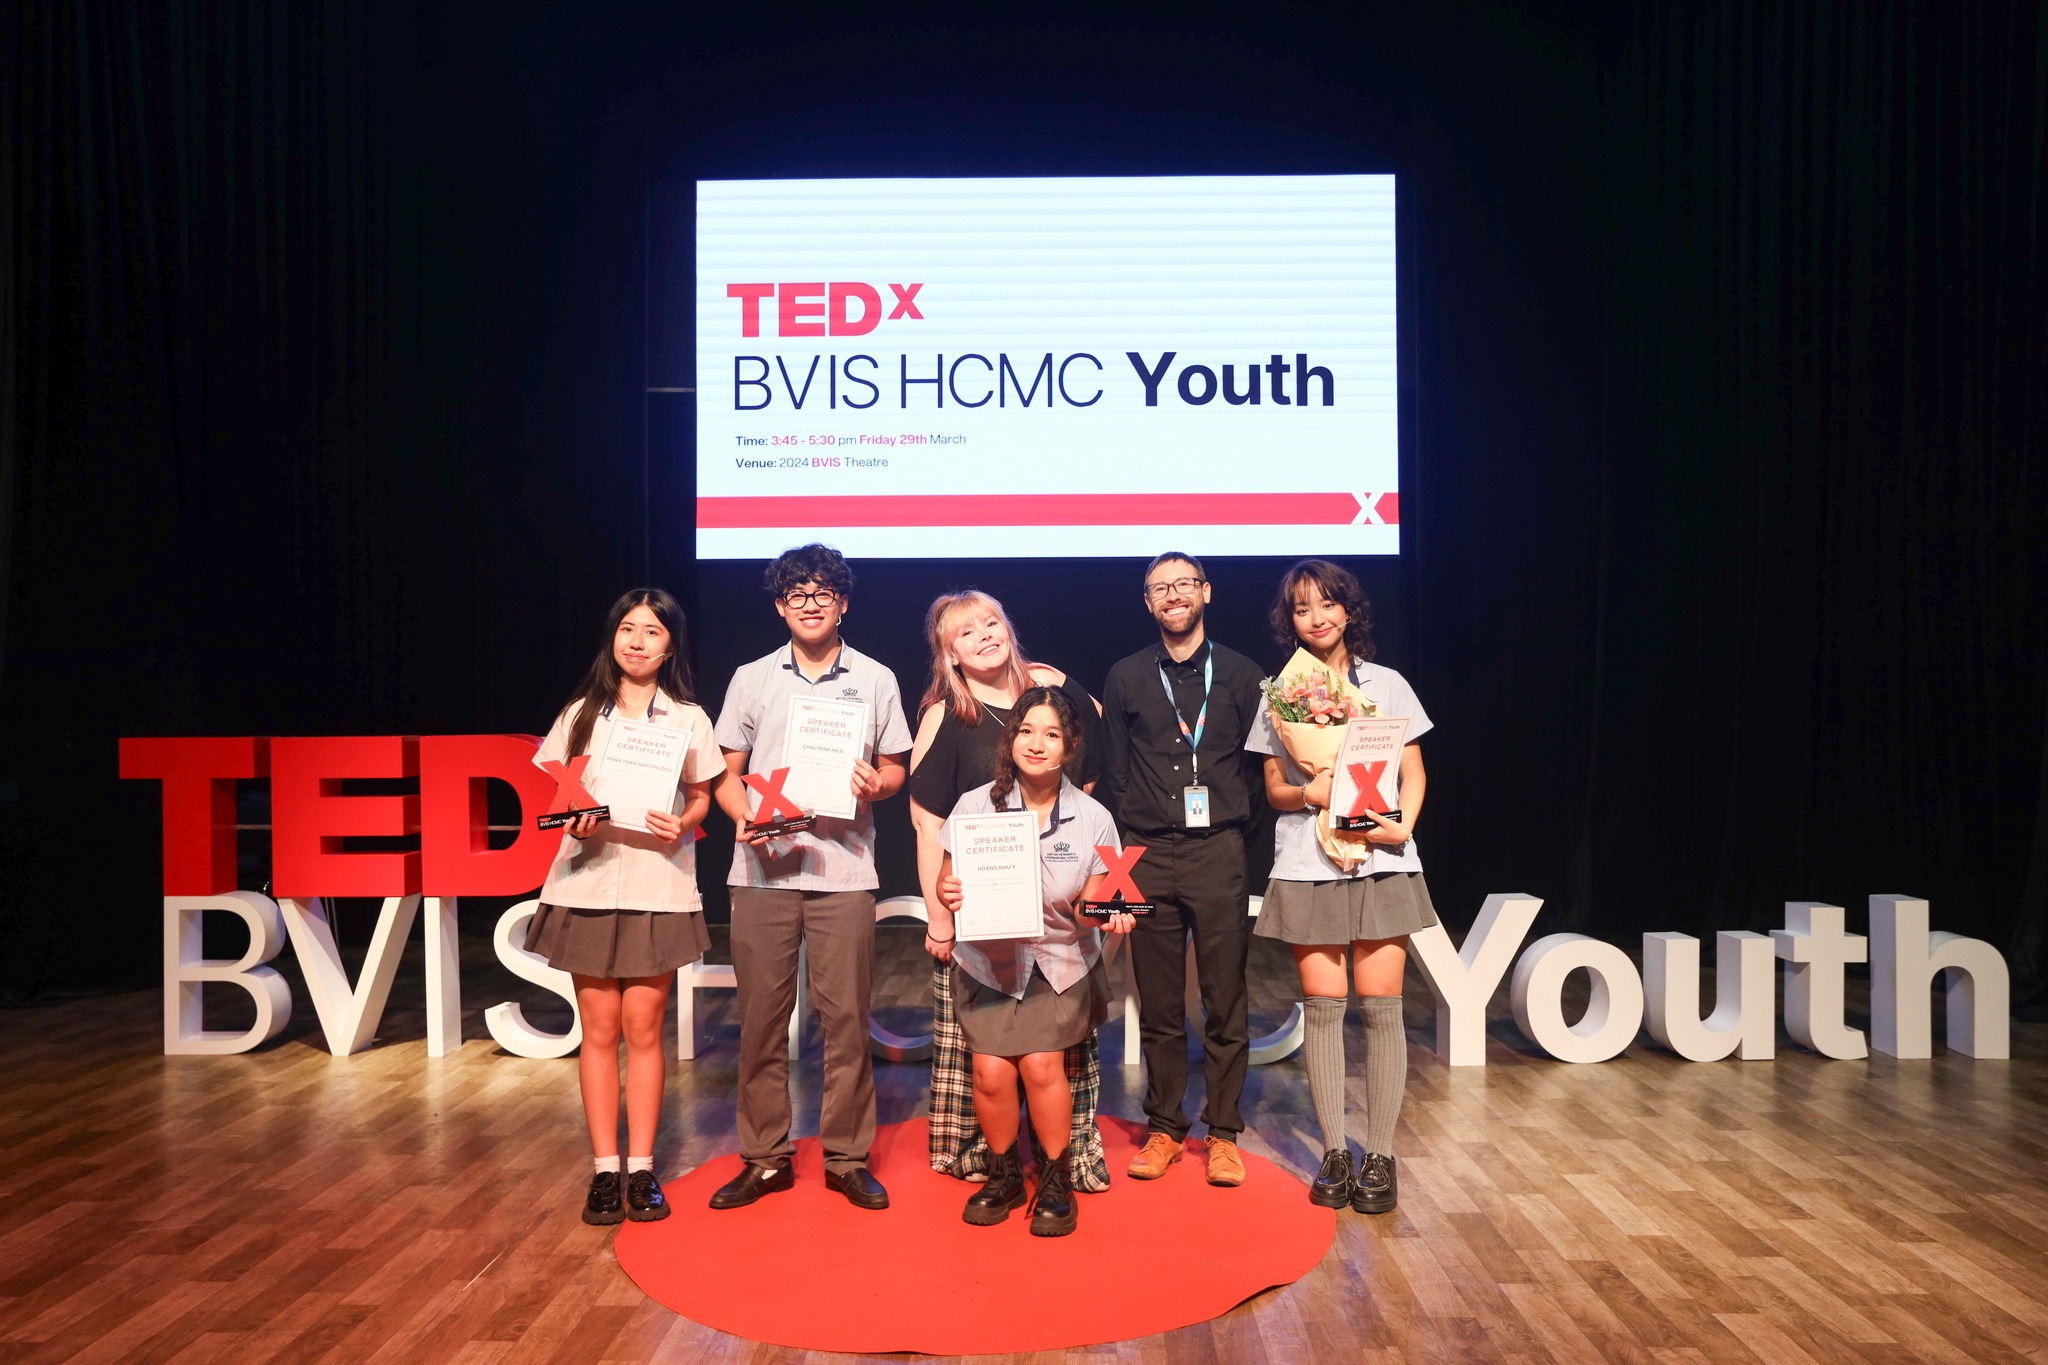 Bùng nổ cơn bão TEDxYOUTH lần đầu tiên tại BVIS!-The first-ever TEDxYOUTH storm at BVIS-TEDx BVISHCMC Youth (6)